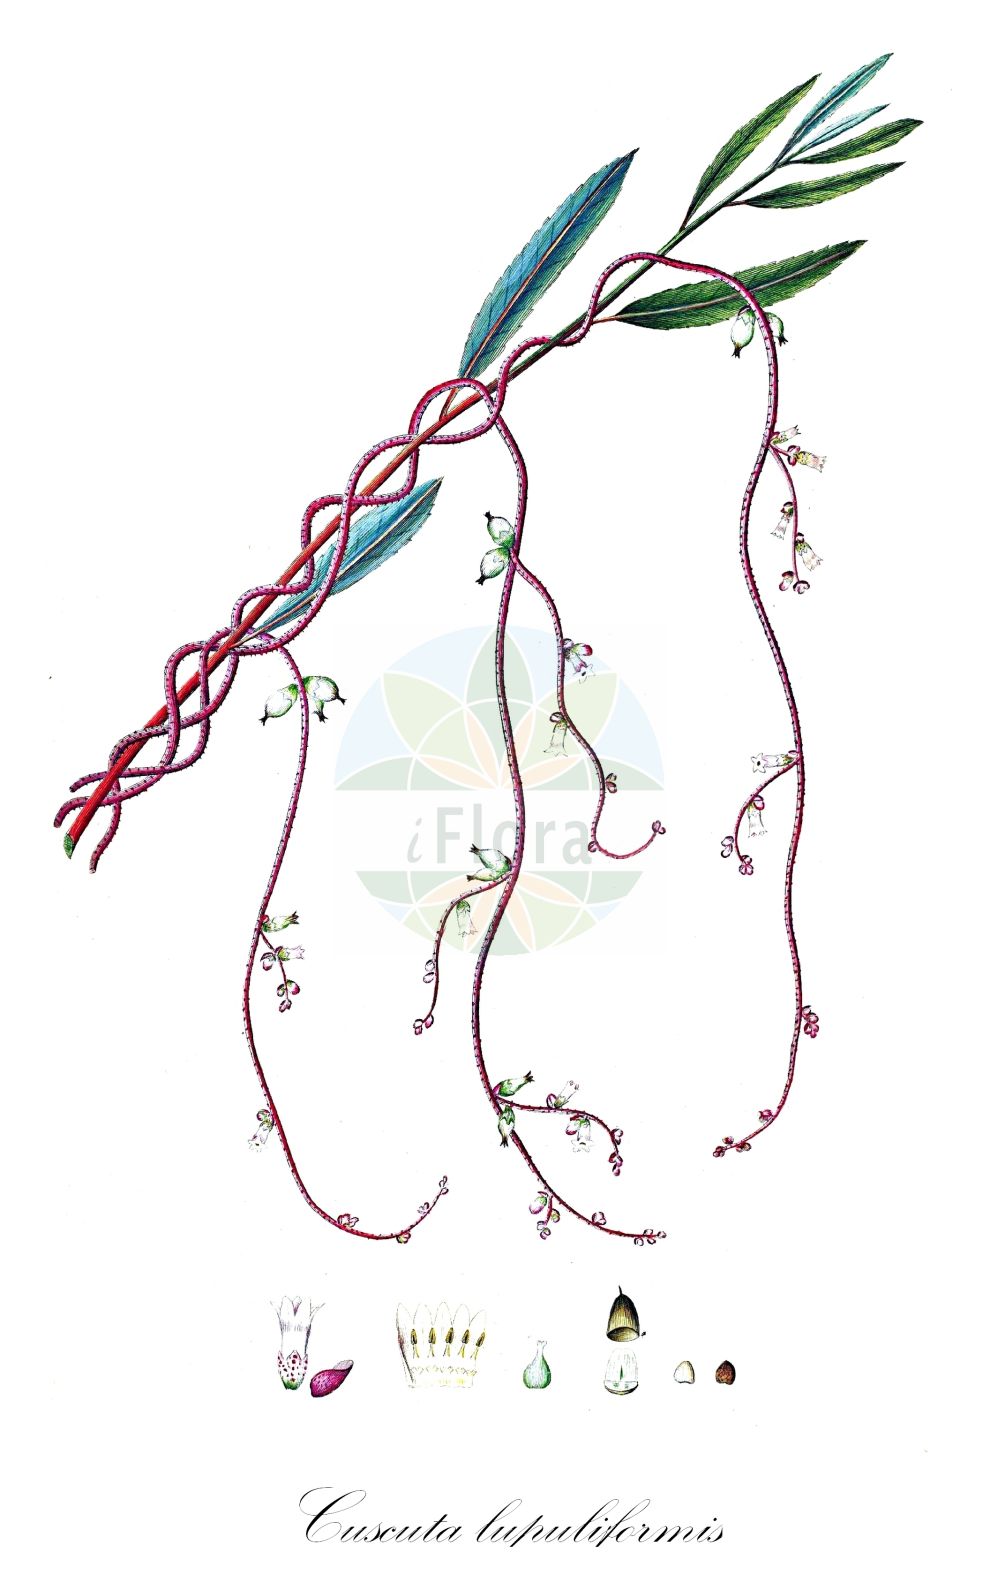 Historische Abbildung von Cuscuta lupuliformis (Pappel-Seide - Hop Dodder). Das Bild zeigt Blatt, Bluete, Frucht und Same. ---- Historical Drawing of Cuscuta lupuliformis (Pappel-Seide - Hop Dodder). The image is showing leaf, flower, fruit and seed.(Cuscuta lupuliformis,Pappel-Seide,Hop Dodder,Cuscuta lupuliformis,Monogynella lupuliformis,Pappel-Seide,Baum-Seide,Hop Dodder,Willow Dodder,Cuscuta,Seide,Dodder,Convolvulaceae,Windengewächse,Bindweed family,Blatt,Bluete,Frucht,Same,leaf,flower,fruit,seed,Oeder (1761-1883))